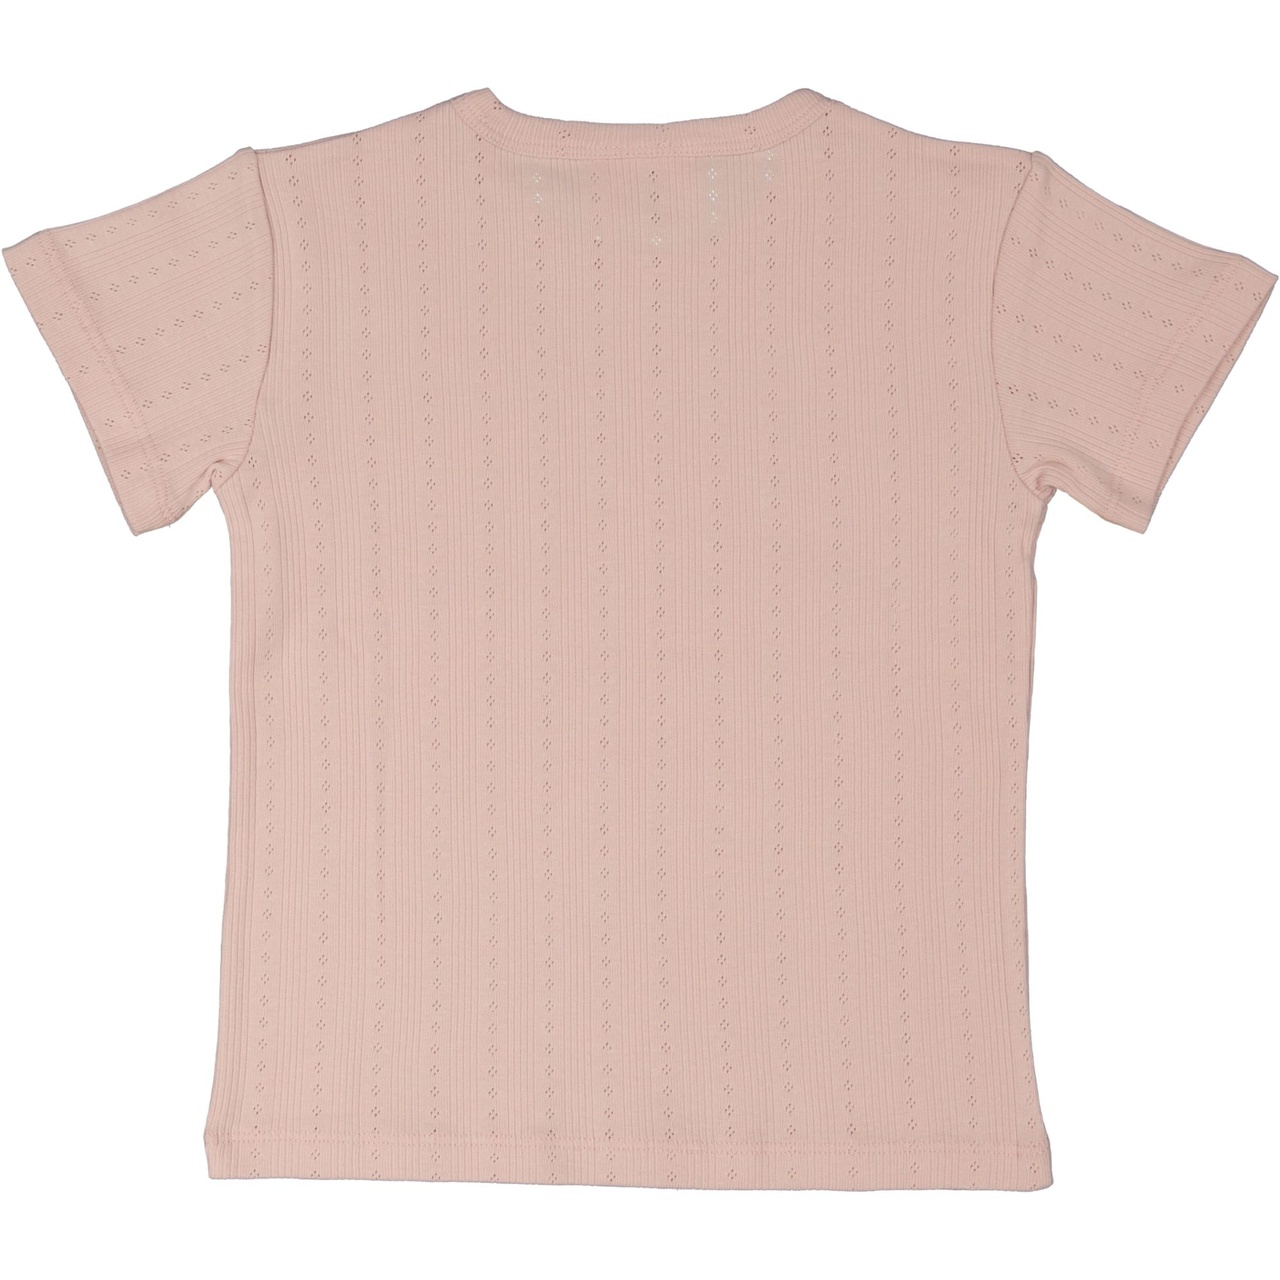 T-shirt Pink Rose  74/80